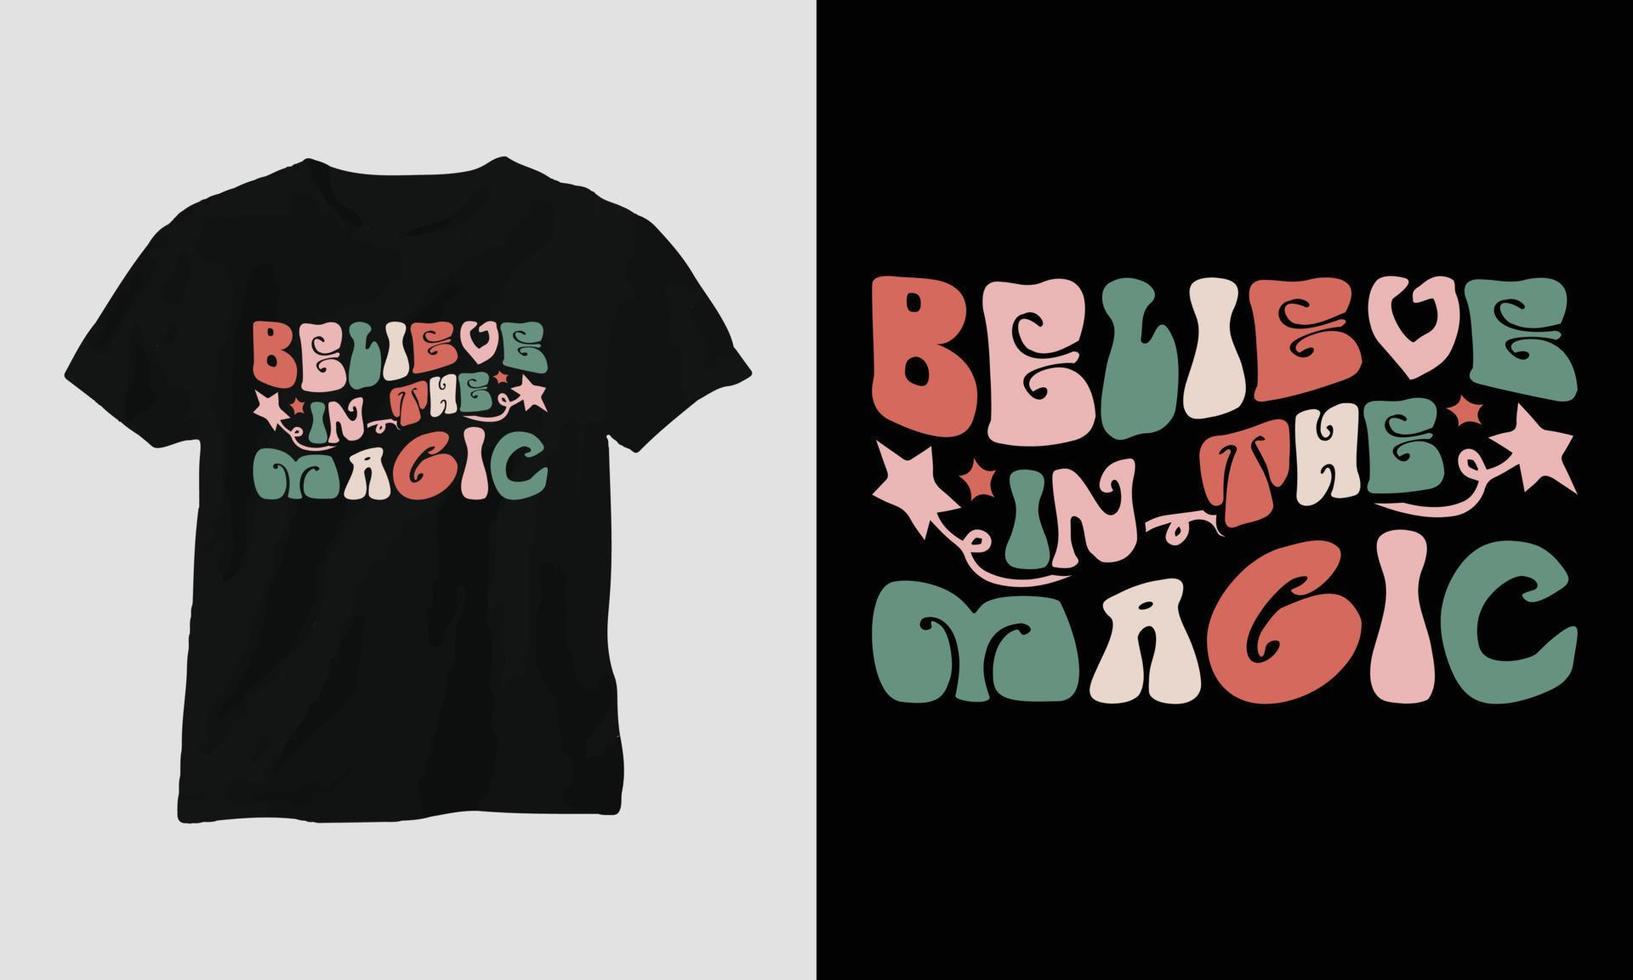 tro i de magi - jul retro häftig t-shirt och kläder design. vektor